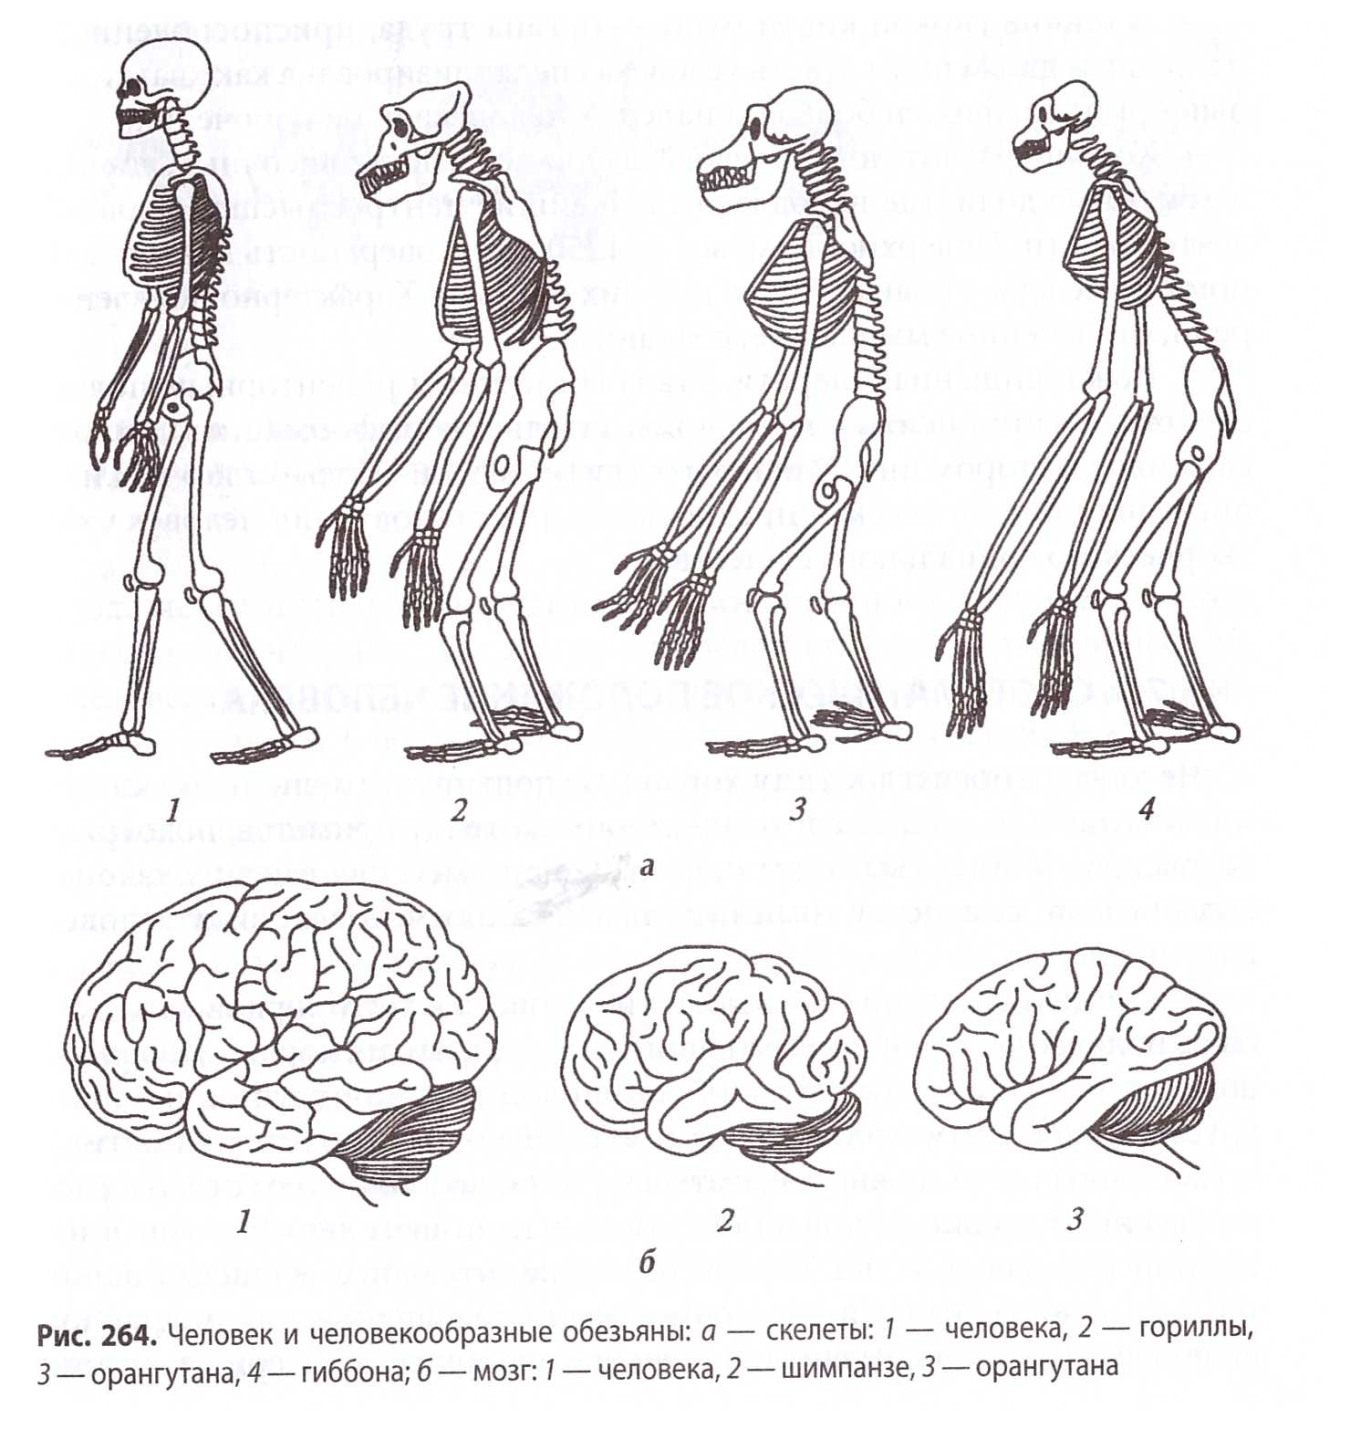 Отличие человека от животного скелет. Сравнение скелета человека и человекообразной обезьяны. Строение мозга человекообразной обезьяны. Строение скелета человека и человекообразных обезьян. Эволюция человекообразных обезьян.